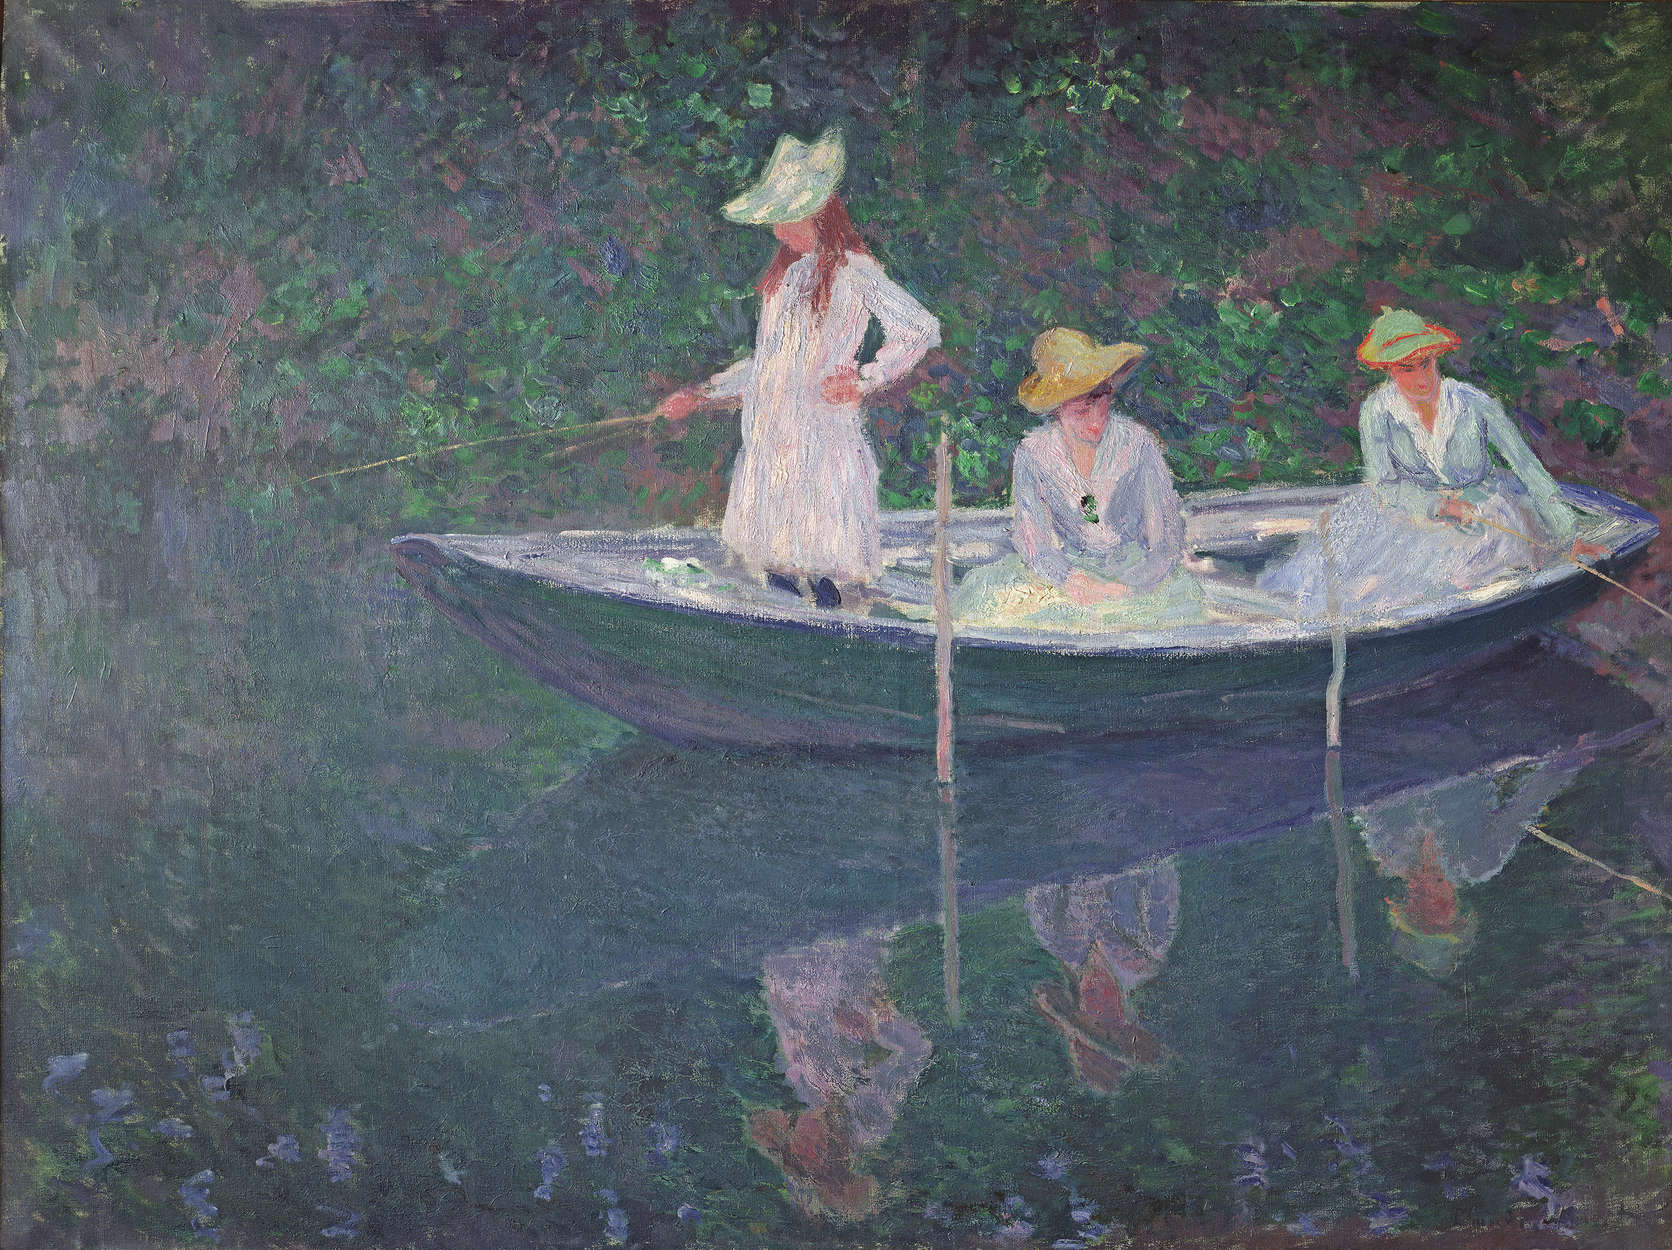             Mural "La barca de Giverny" de Claude Monet
        